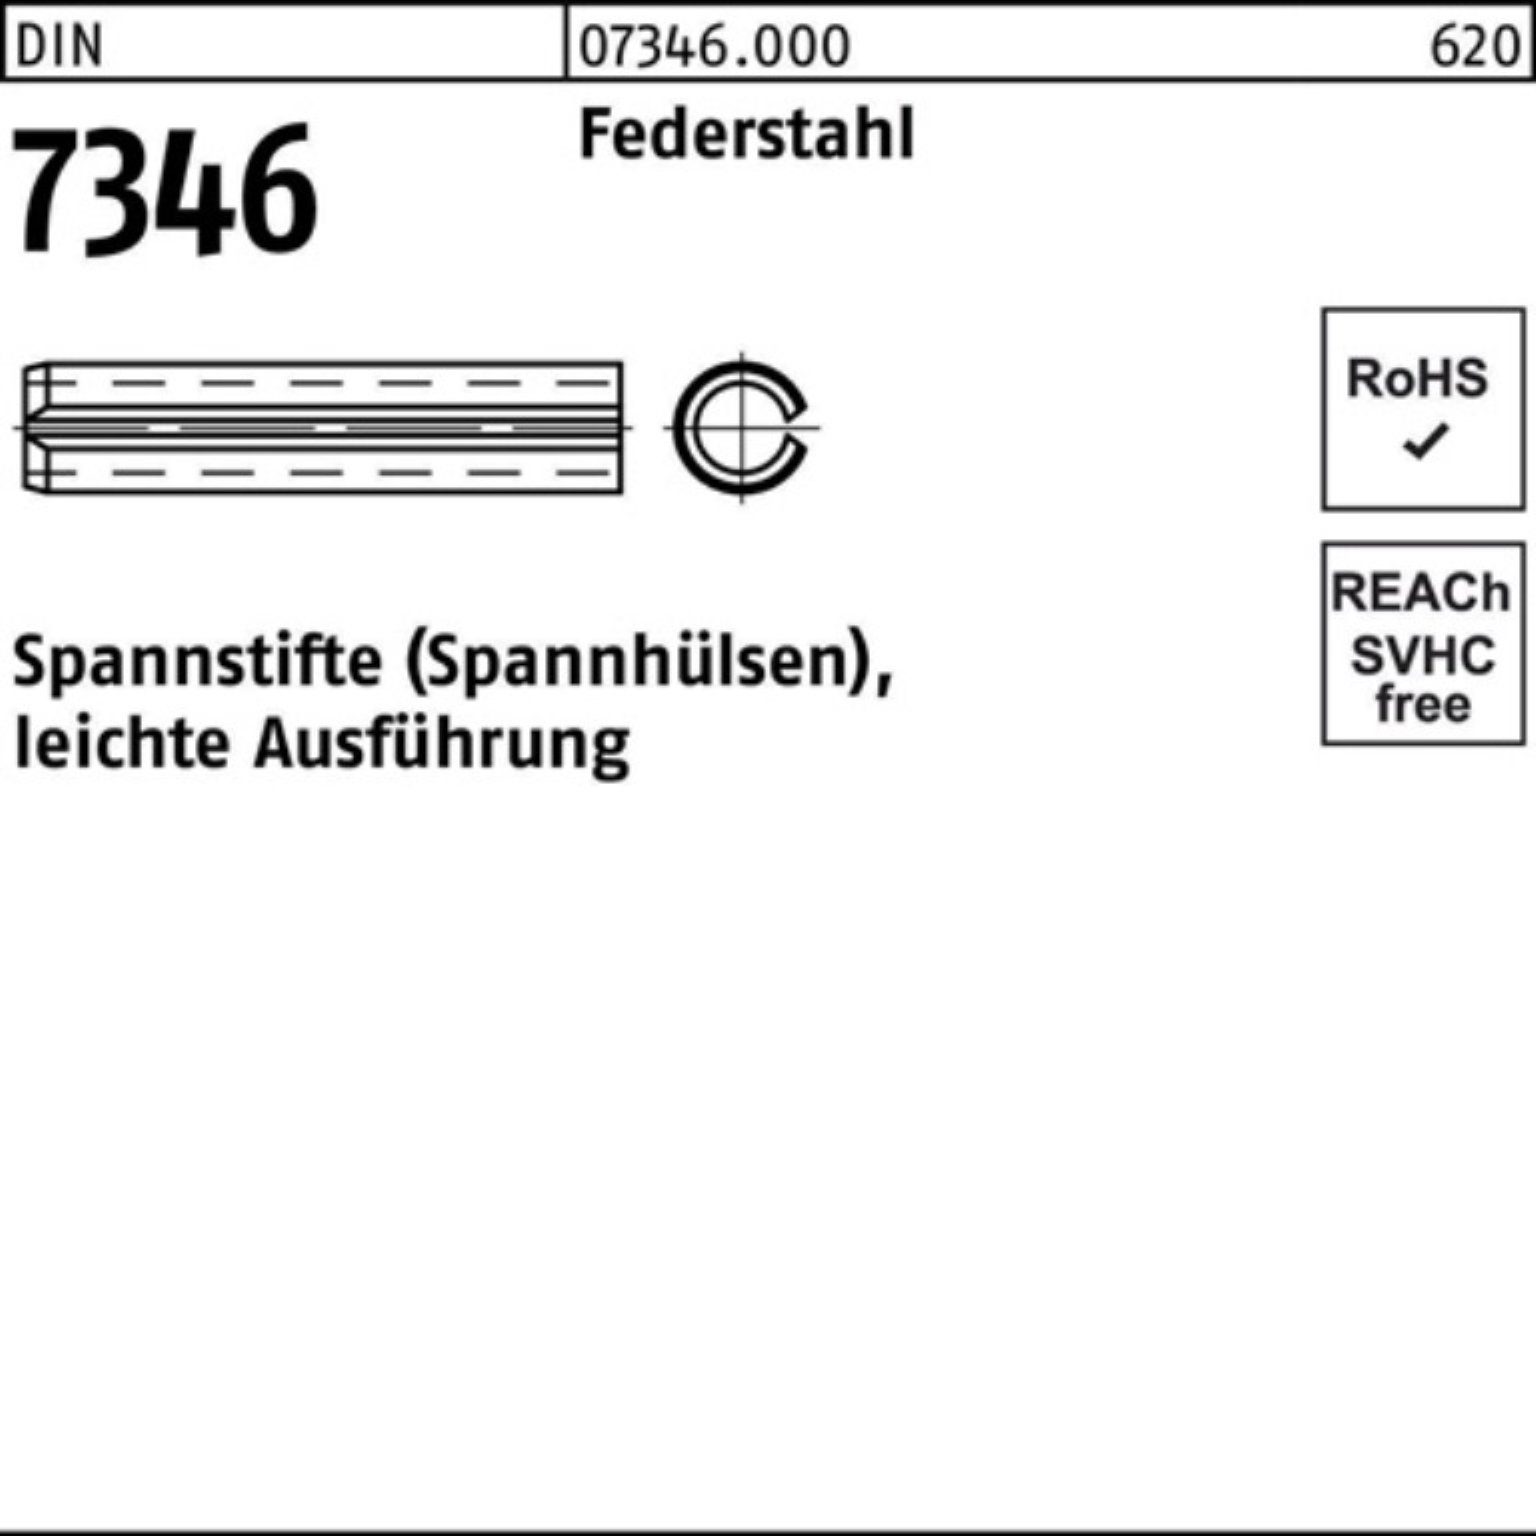 Pack leichte Reyher Ausf DIN 22 13337 Spannstift Spannstift 7346/ISO 4x 200er Federstahl